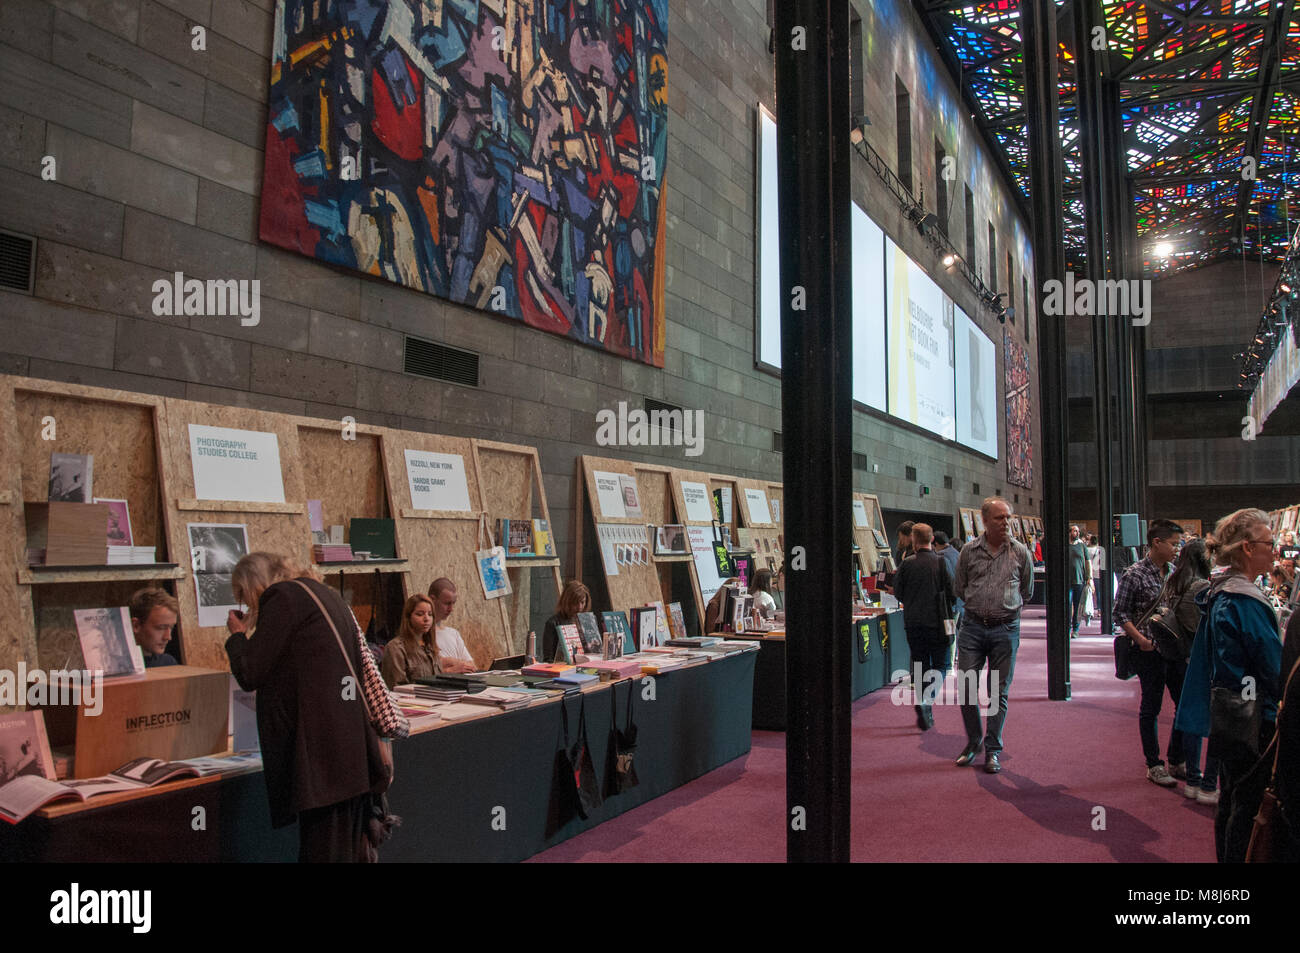 Feria del libro de arte de Melbourne, en marzo de 2018, "acercamiento creativo editores establecidos y emergentes, artistas y escritores" en la Galería Nacional de Victoria, Australia Foto de stock